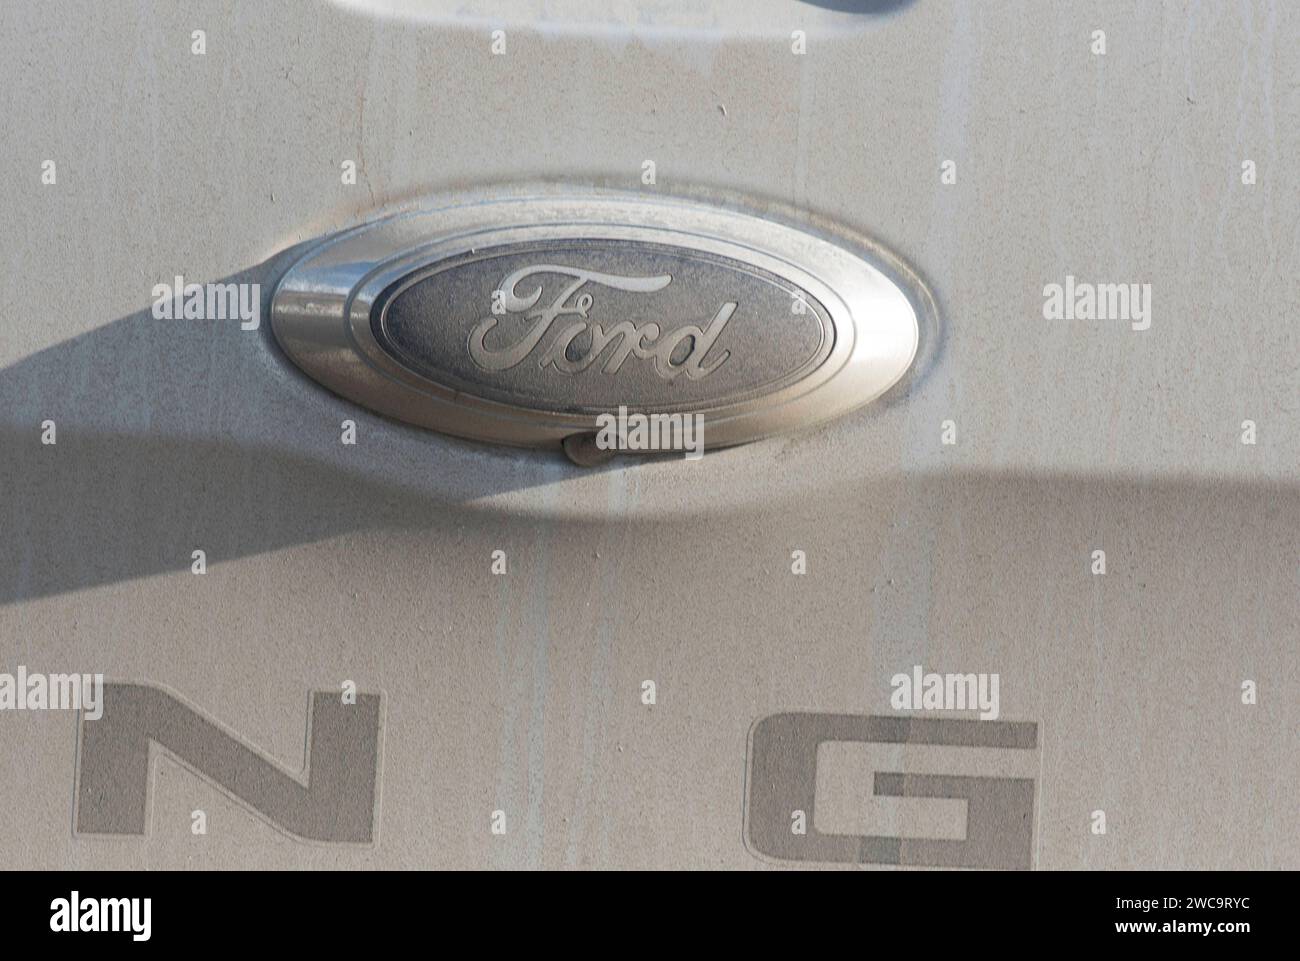 ford come marchio di auto o marchio automobilistico nel settore dei trasporti e della mobilità ford come marchio di auto Foto Stock